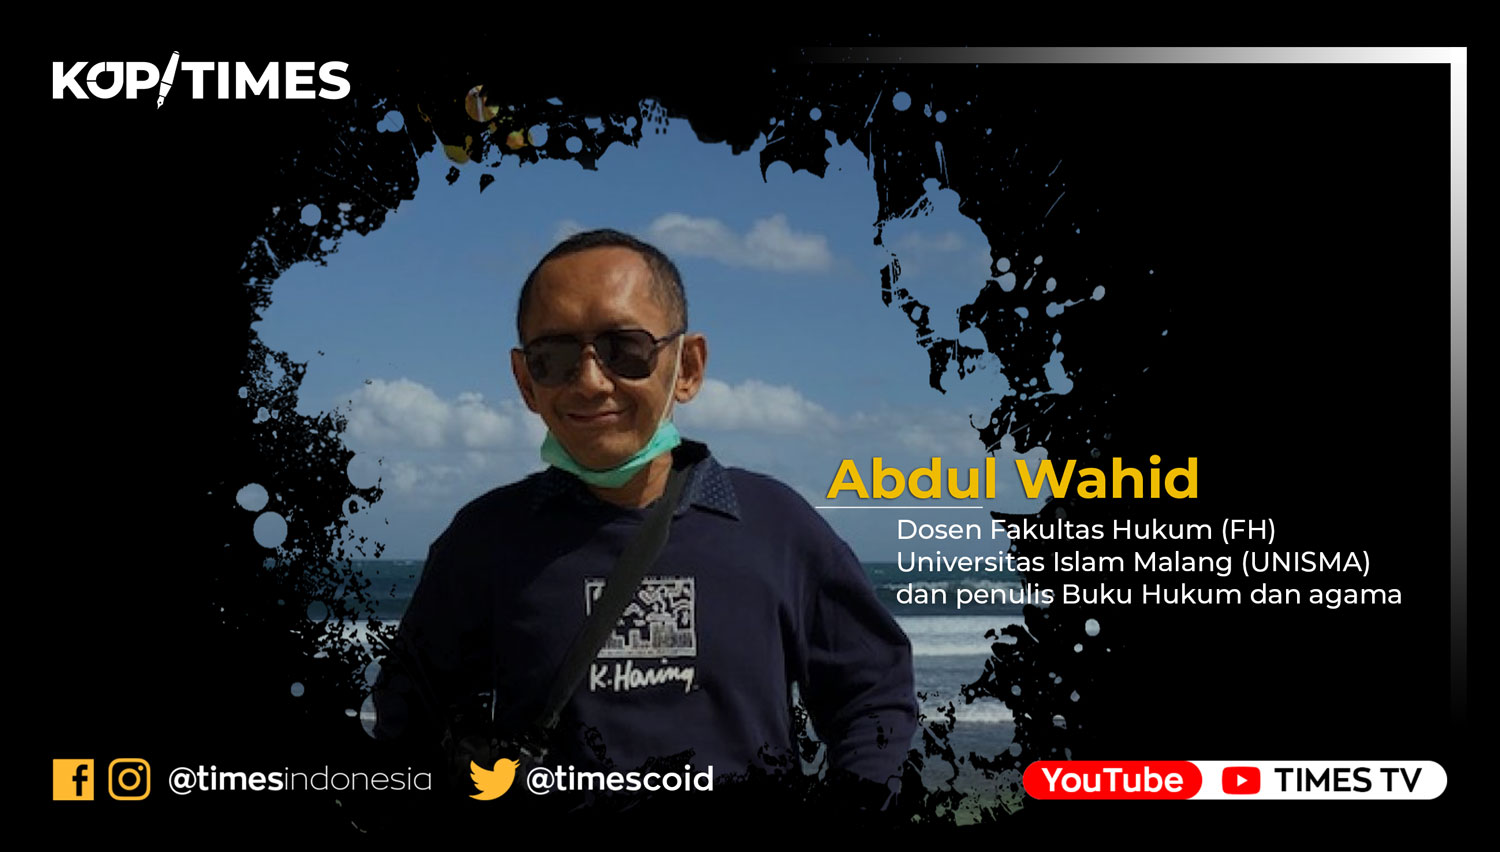 Abdul Wahid, Dosen Fakultas Hukum Universitas Islam Malang (Unisma), penulis buku hukum dan agama.